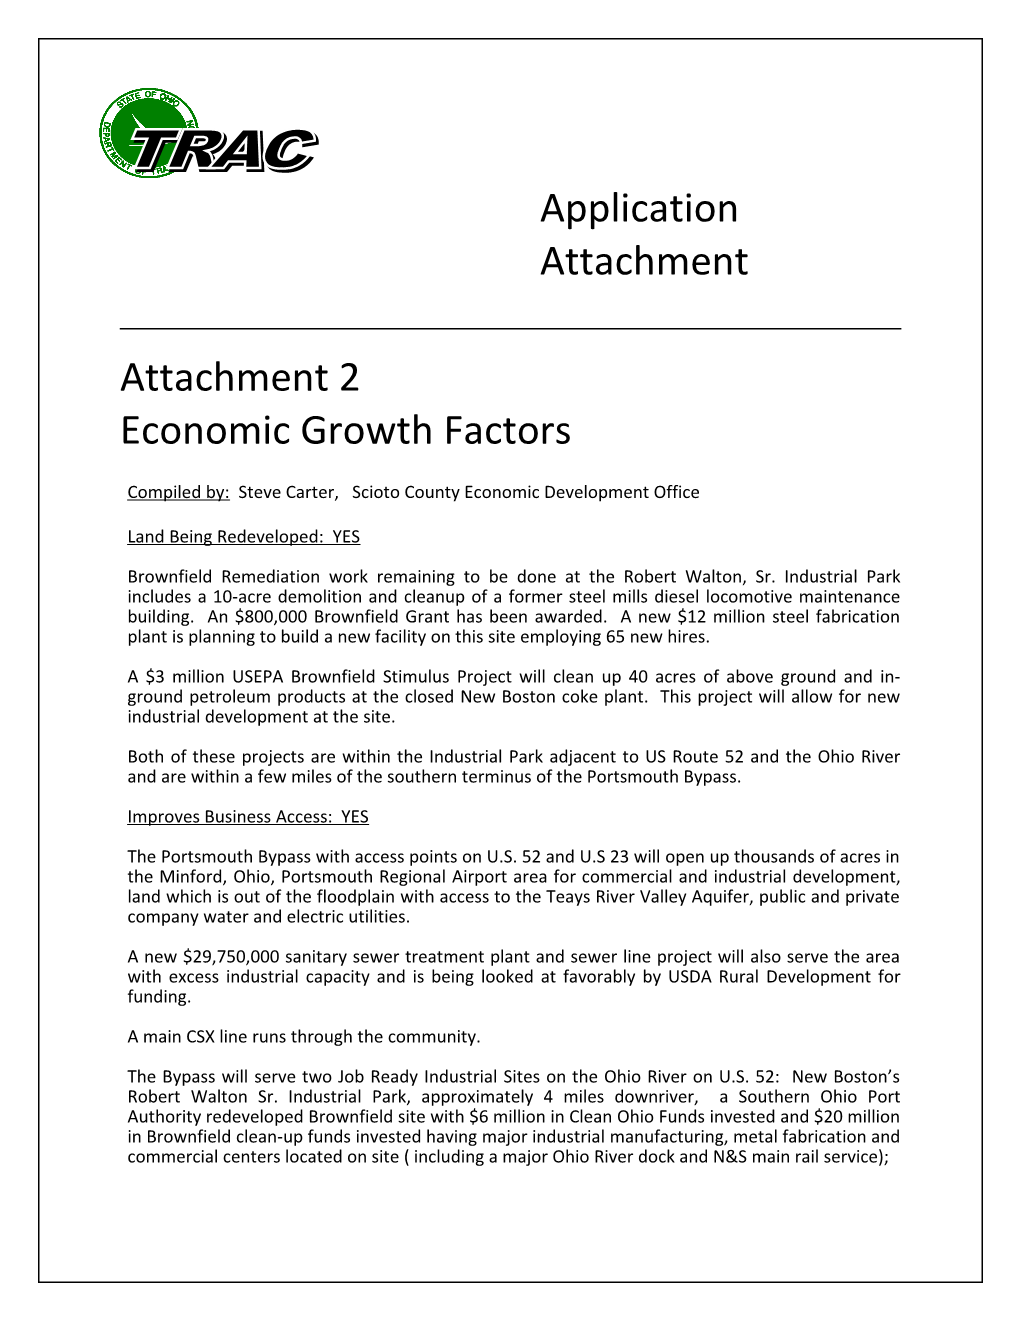 Application Attachment Economic Growth Factors